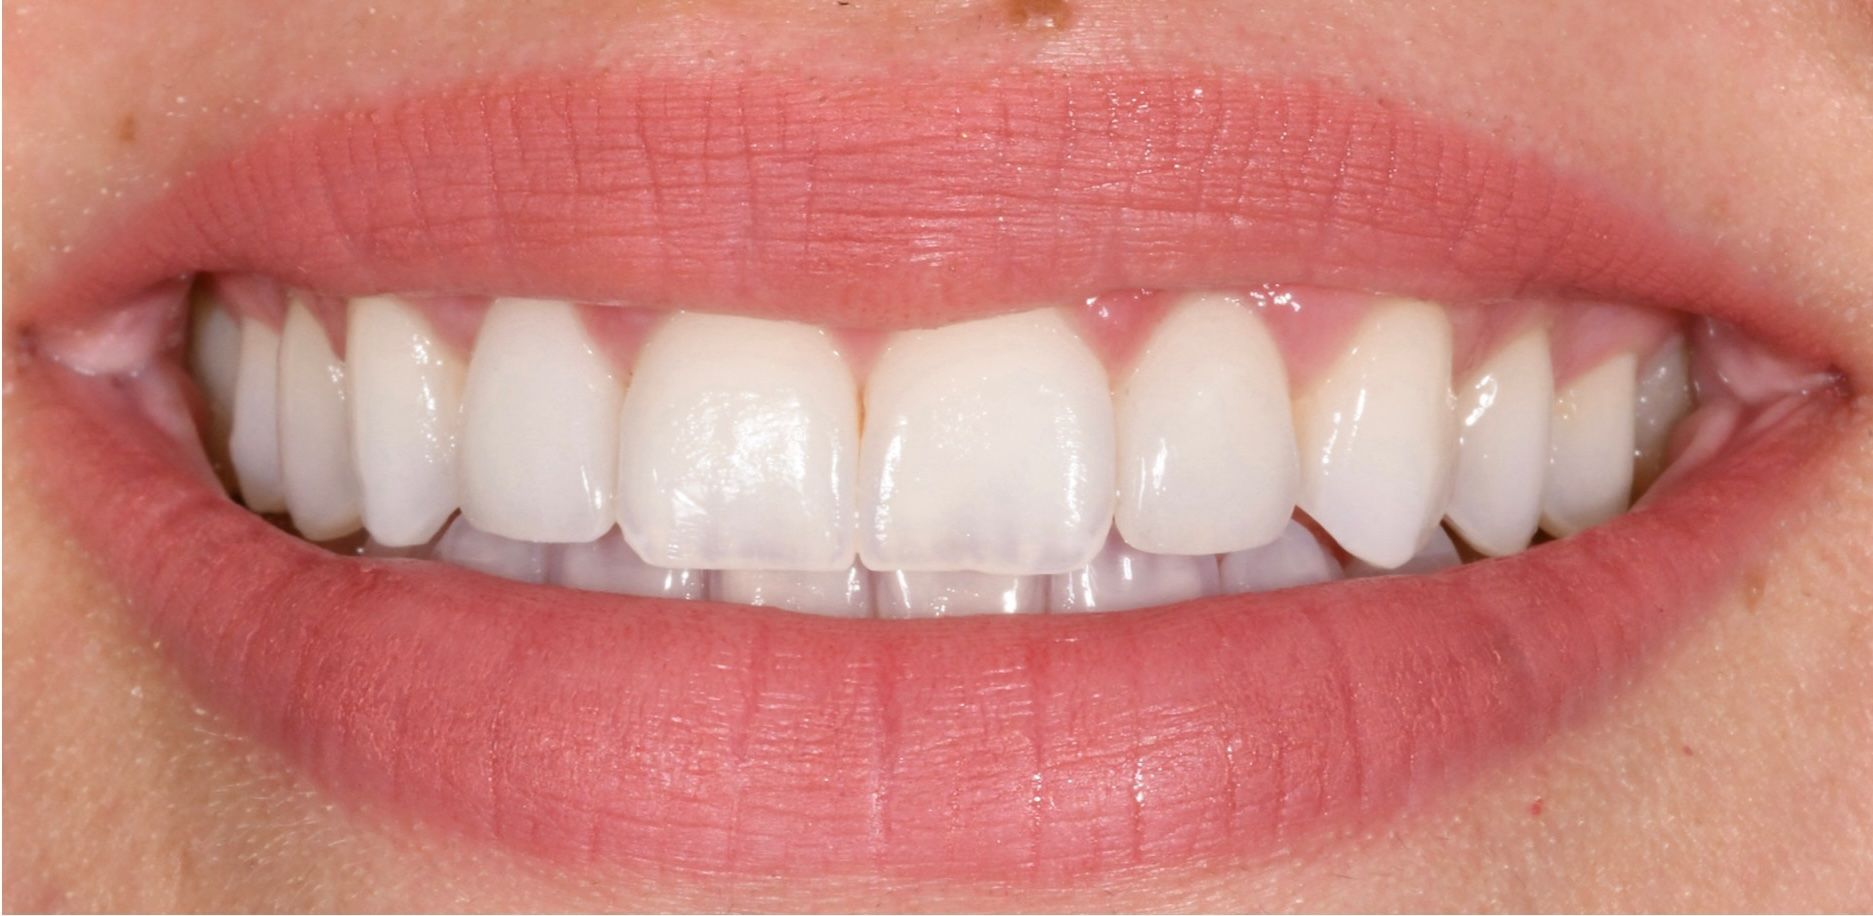 Teeth after getting dental veneers in Birmingham 48009